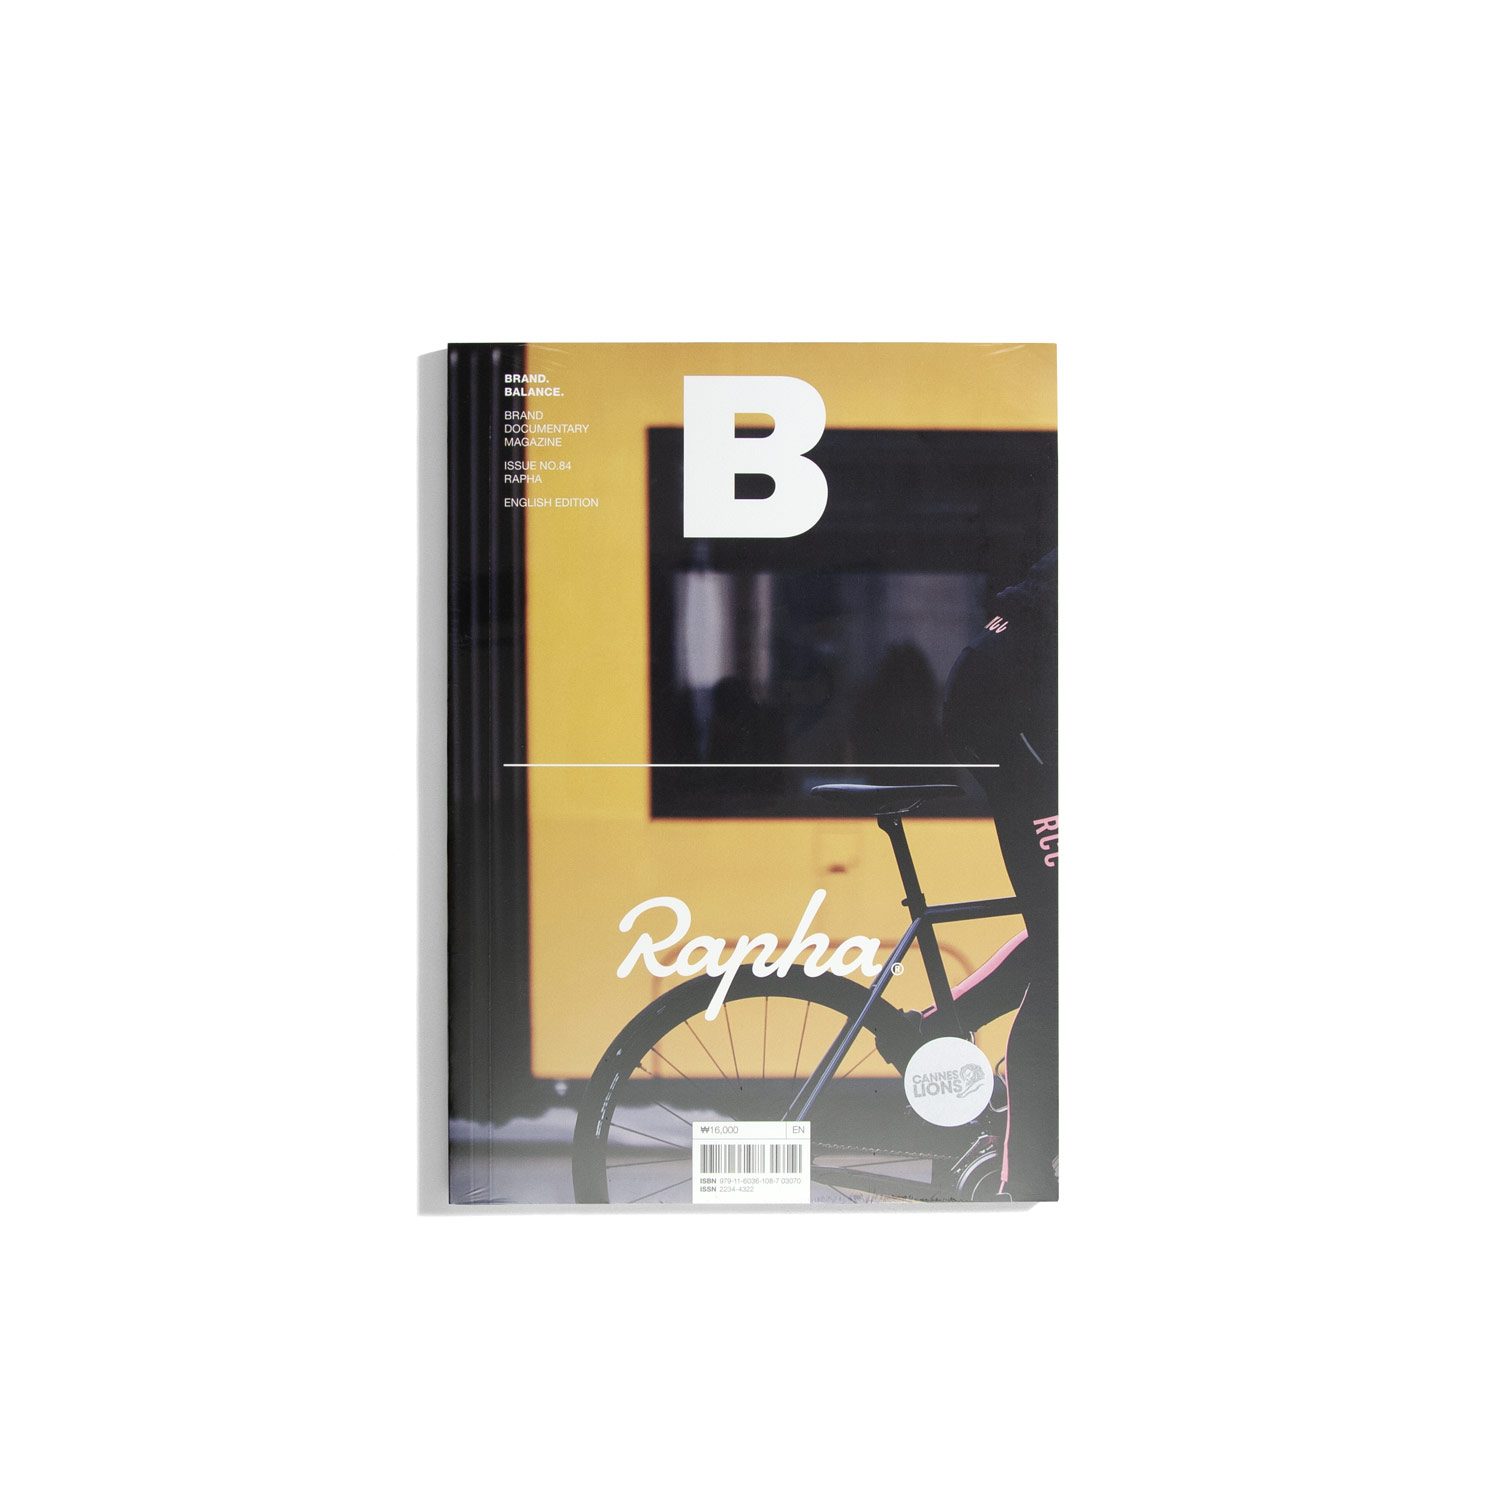 B Brand. Balance. #84 - Rapha